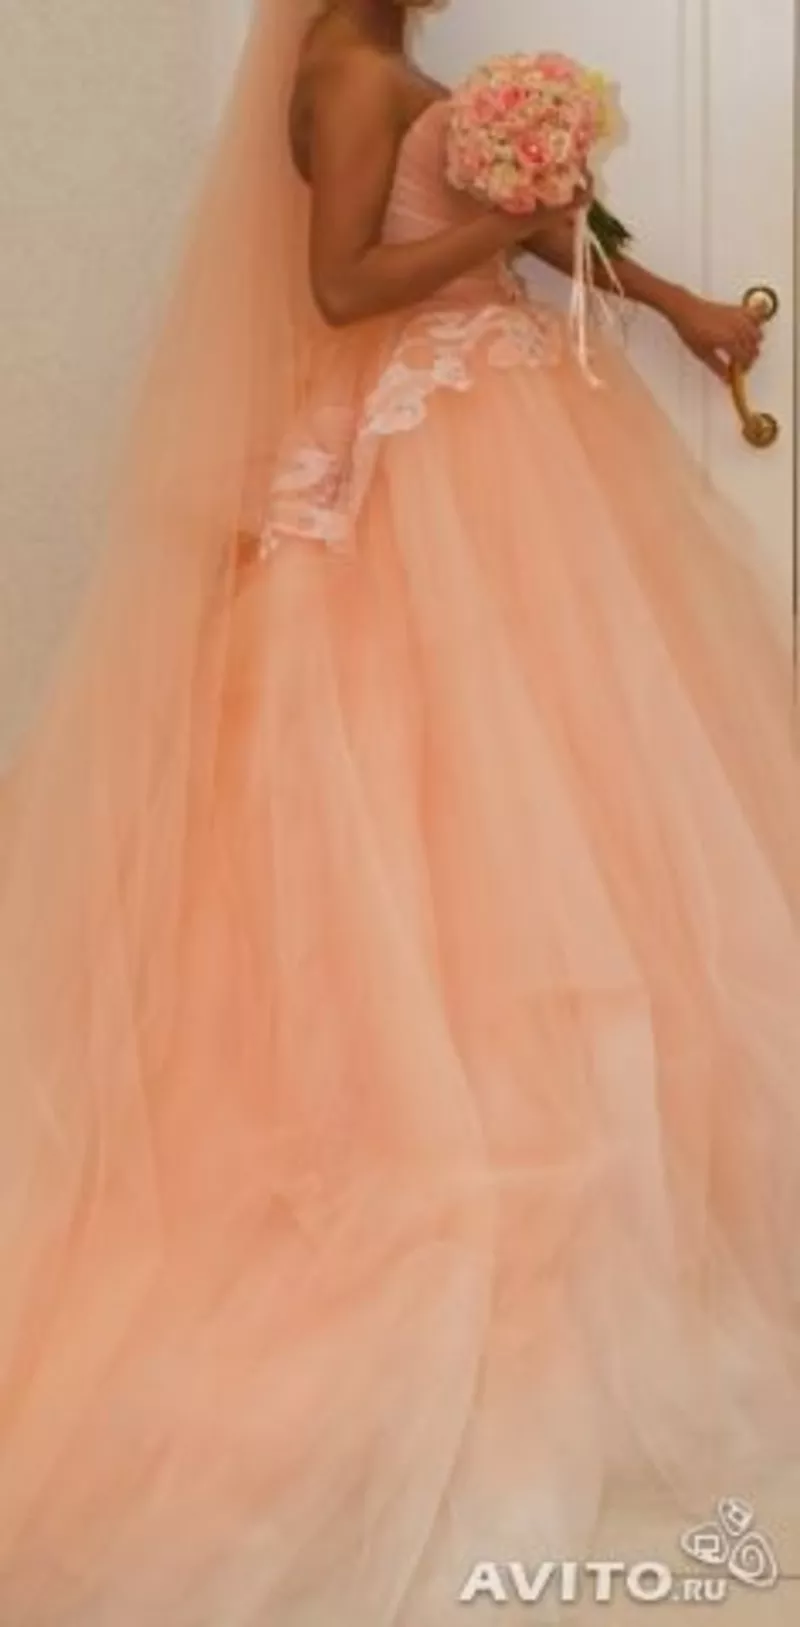 Свадебное платье Цвет коралл-персик. Длинный шлейф, фата,  вышивки. 3